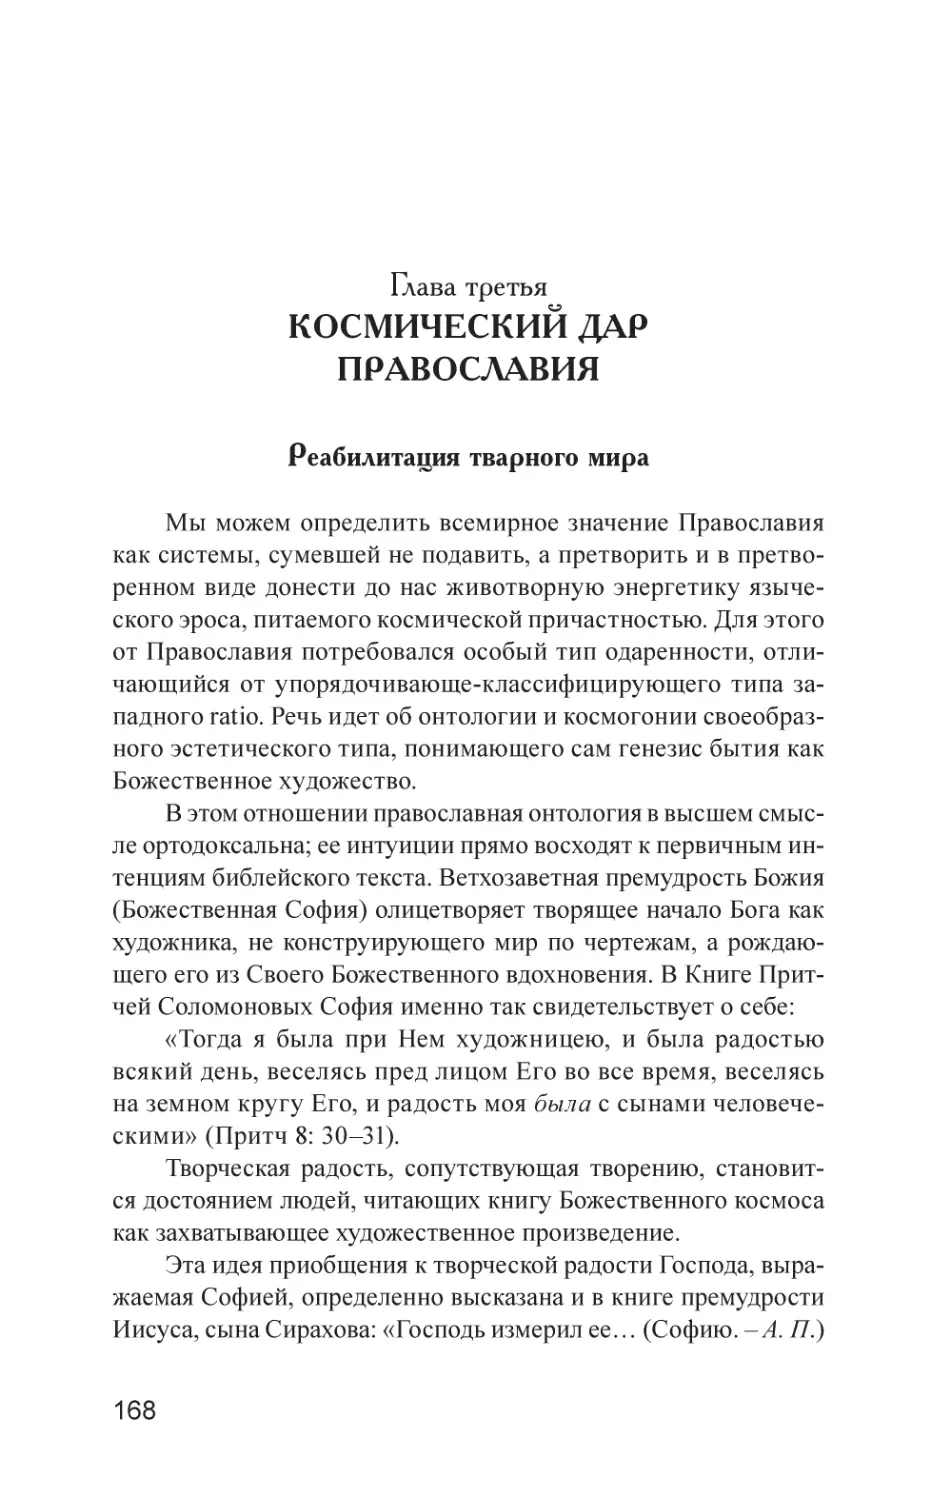 Глава третья. Космический дар Православия
Реабилитация тварного мира